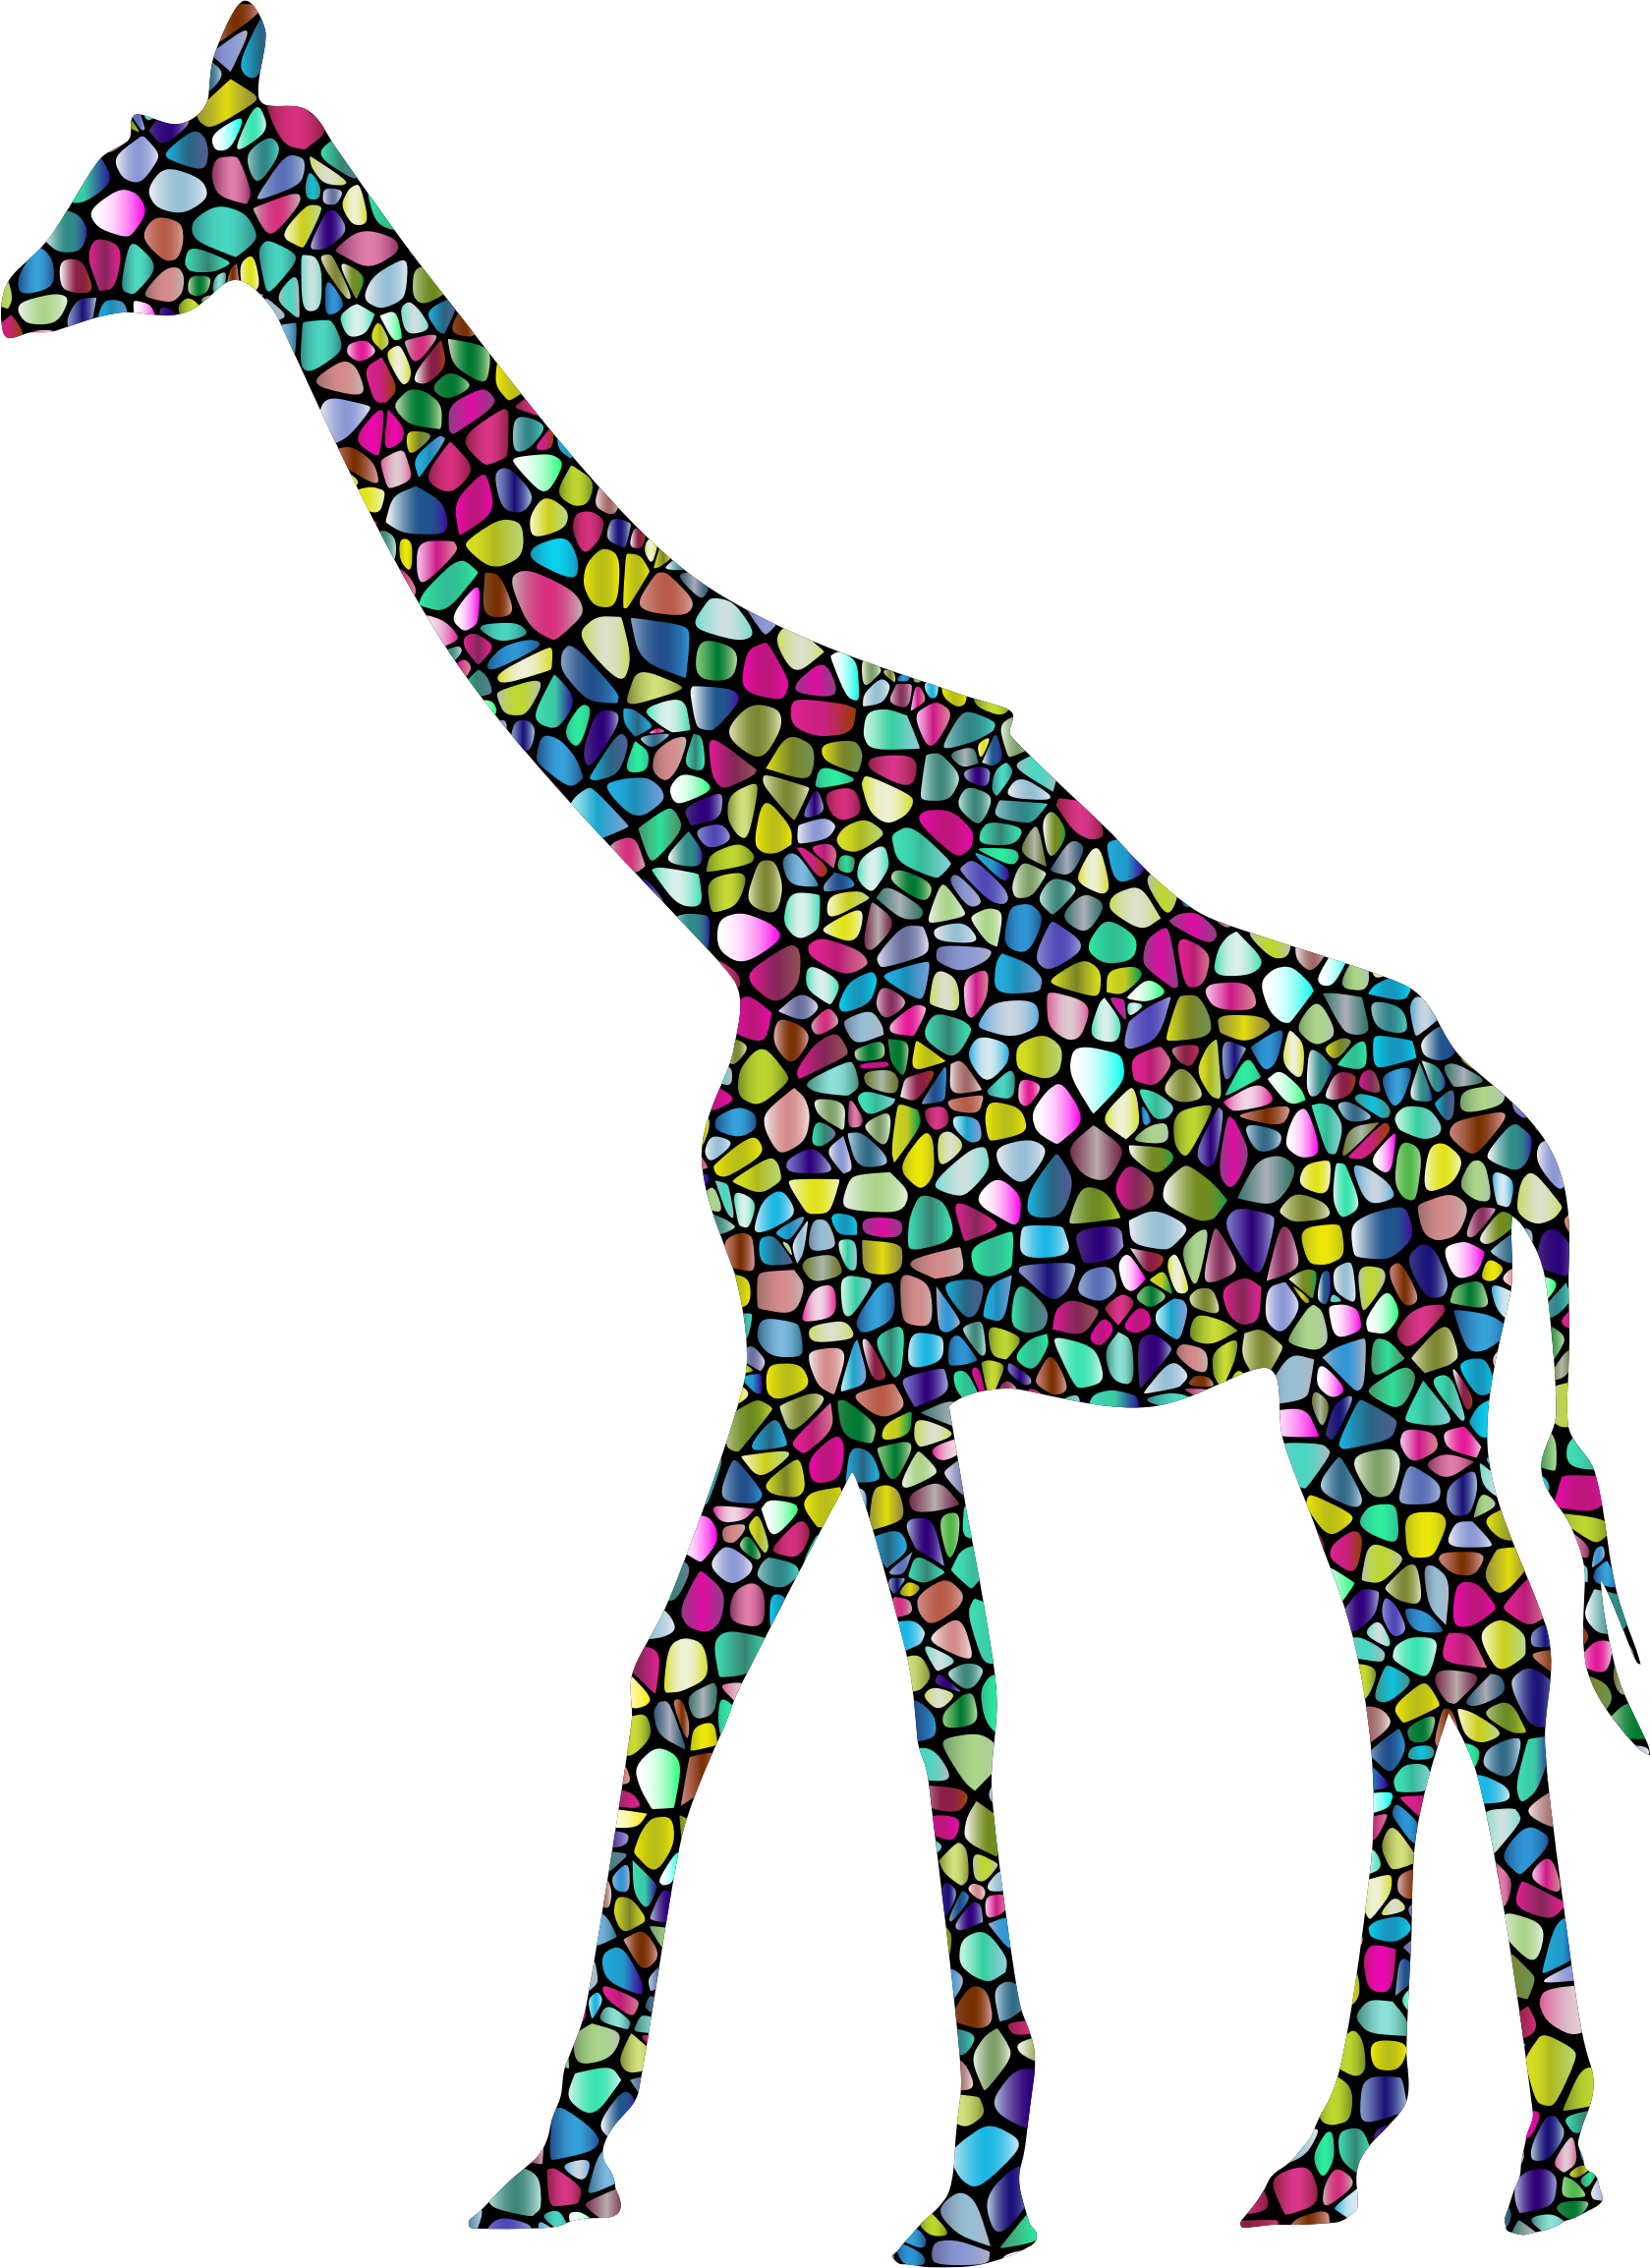 giraffe clipart abstract